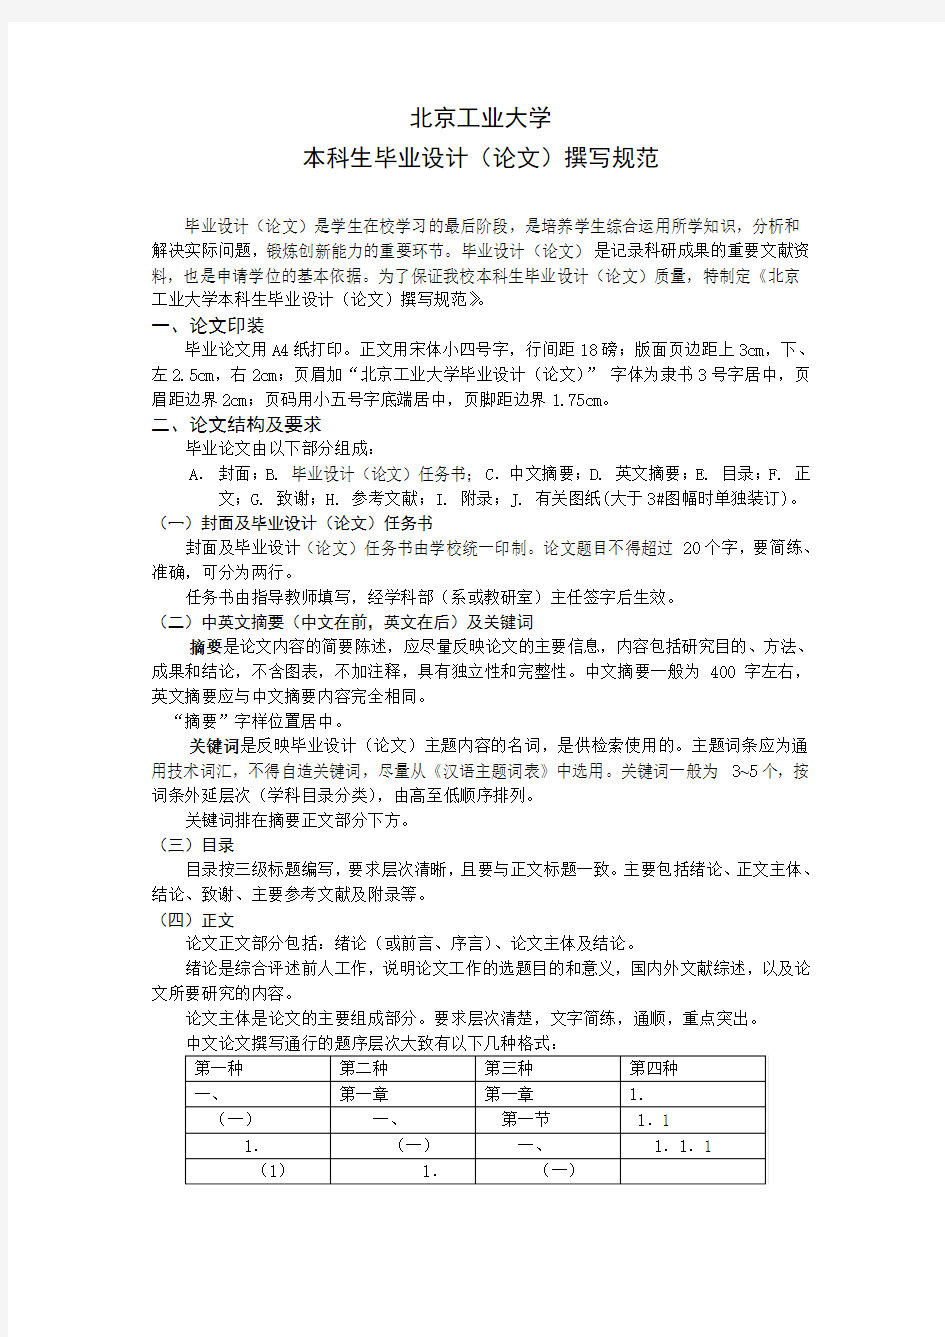 北京工业大学本科生毕业设计(论文)撰写规范